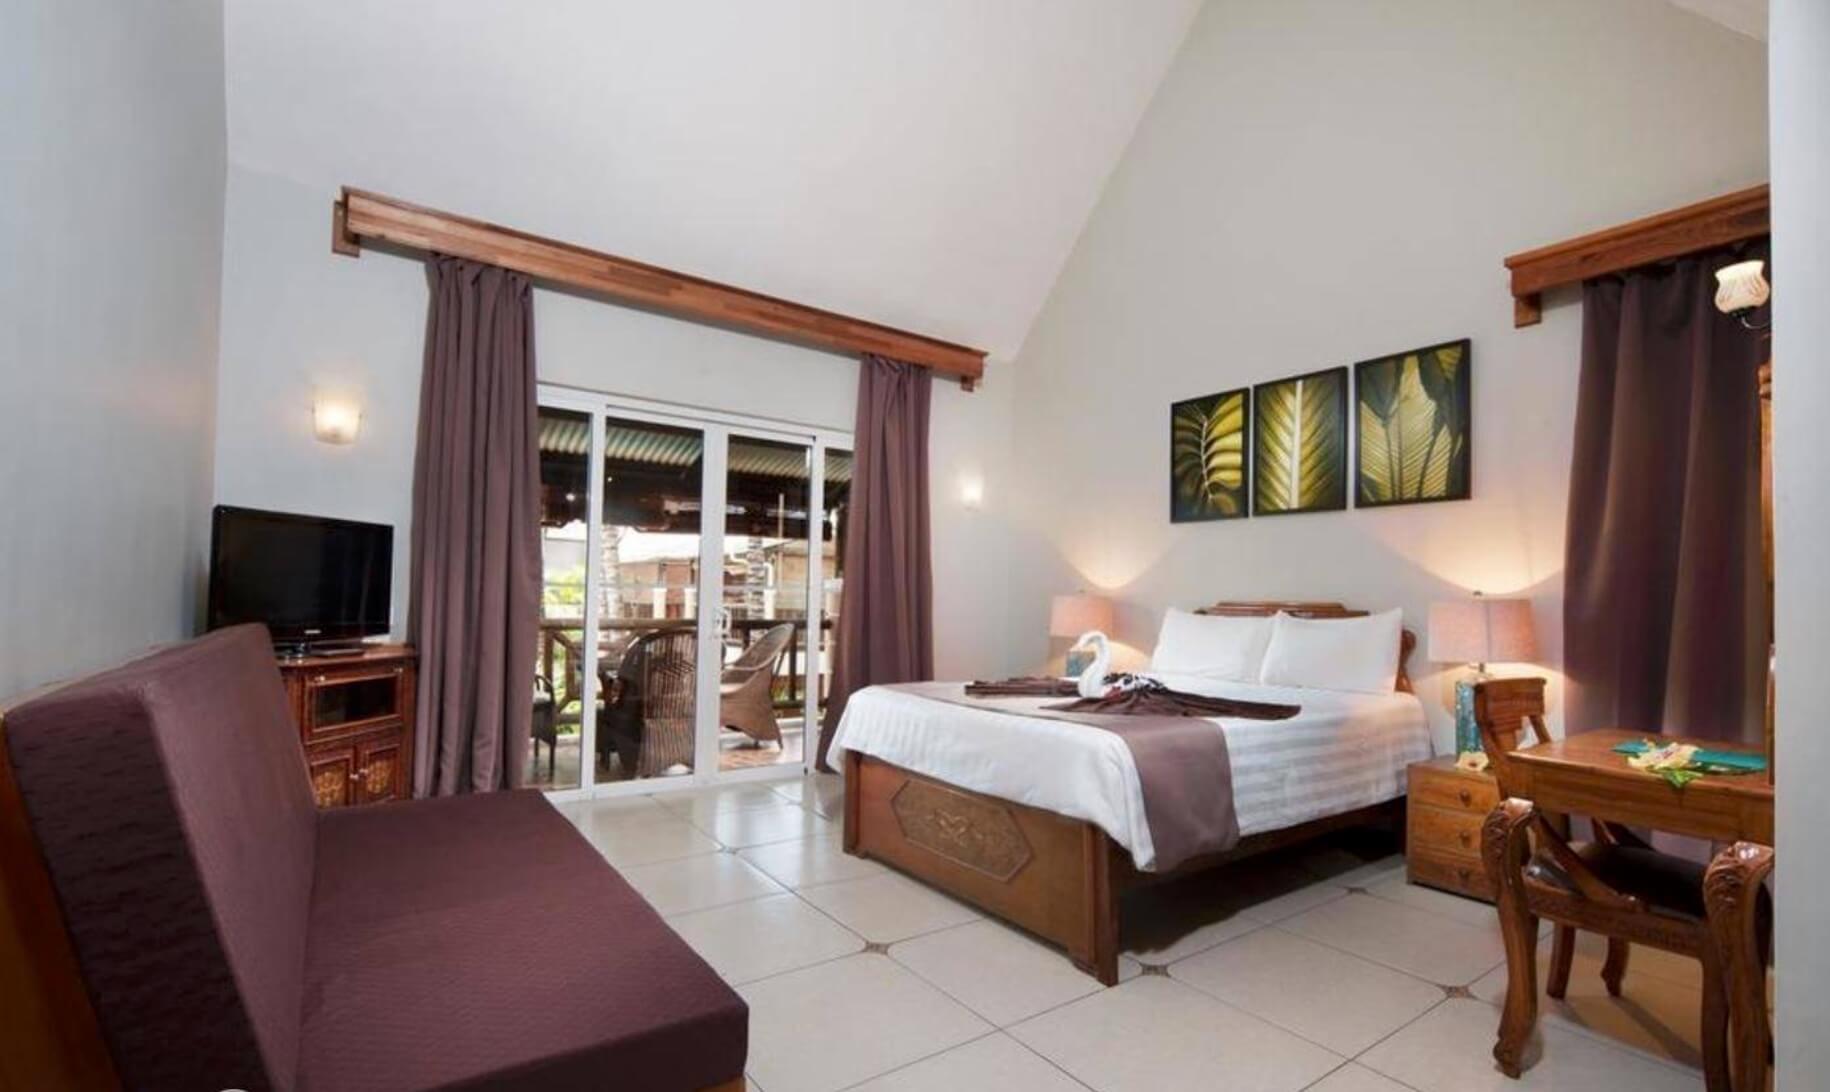 Тур на 8 марта на Маврикий на 11 ночей на Северо-западное побережье в отель Le Palmiste Resort & Spa с 01.03.18 от 180 594 рублей (HB) на двоих